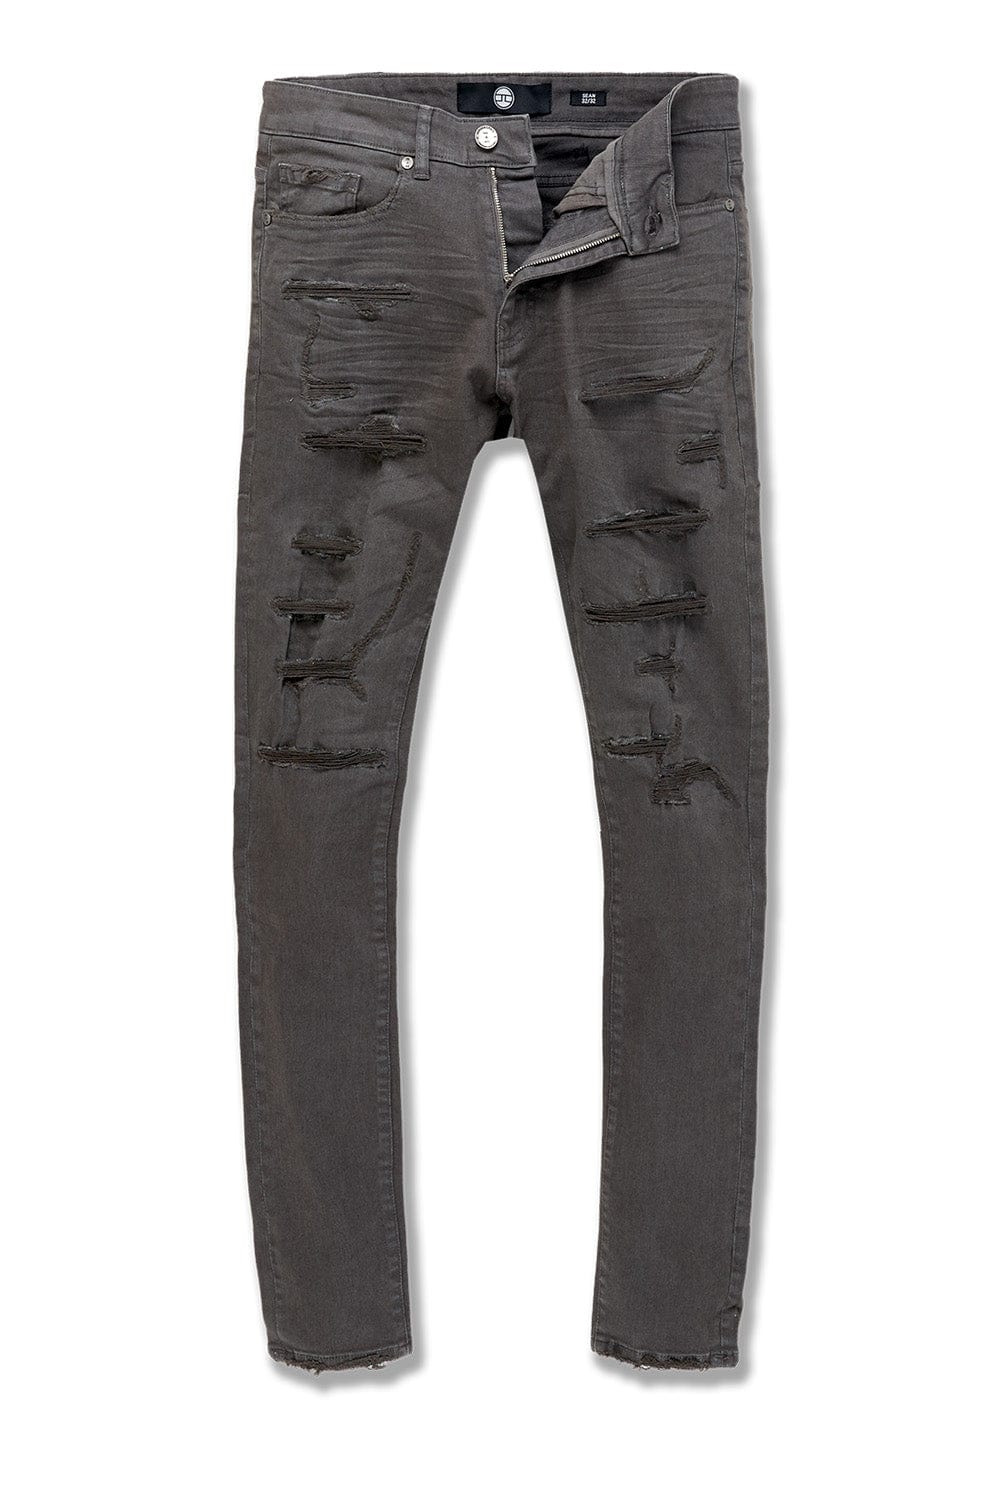 Jordan Craig Ross - Tribeca Twill Pants (Exclusive Colors) Charcoal / 28/32